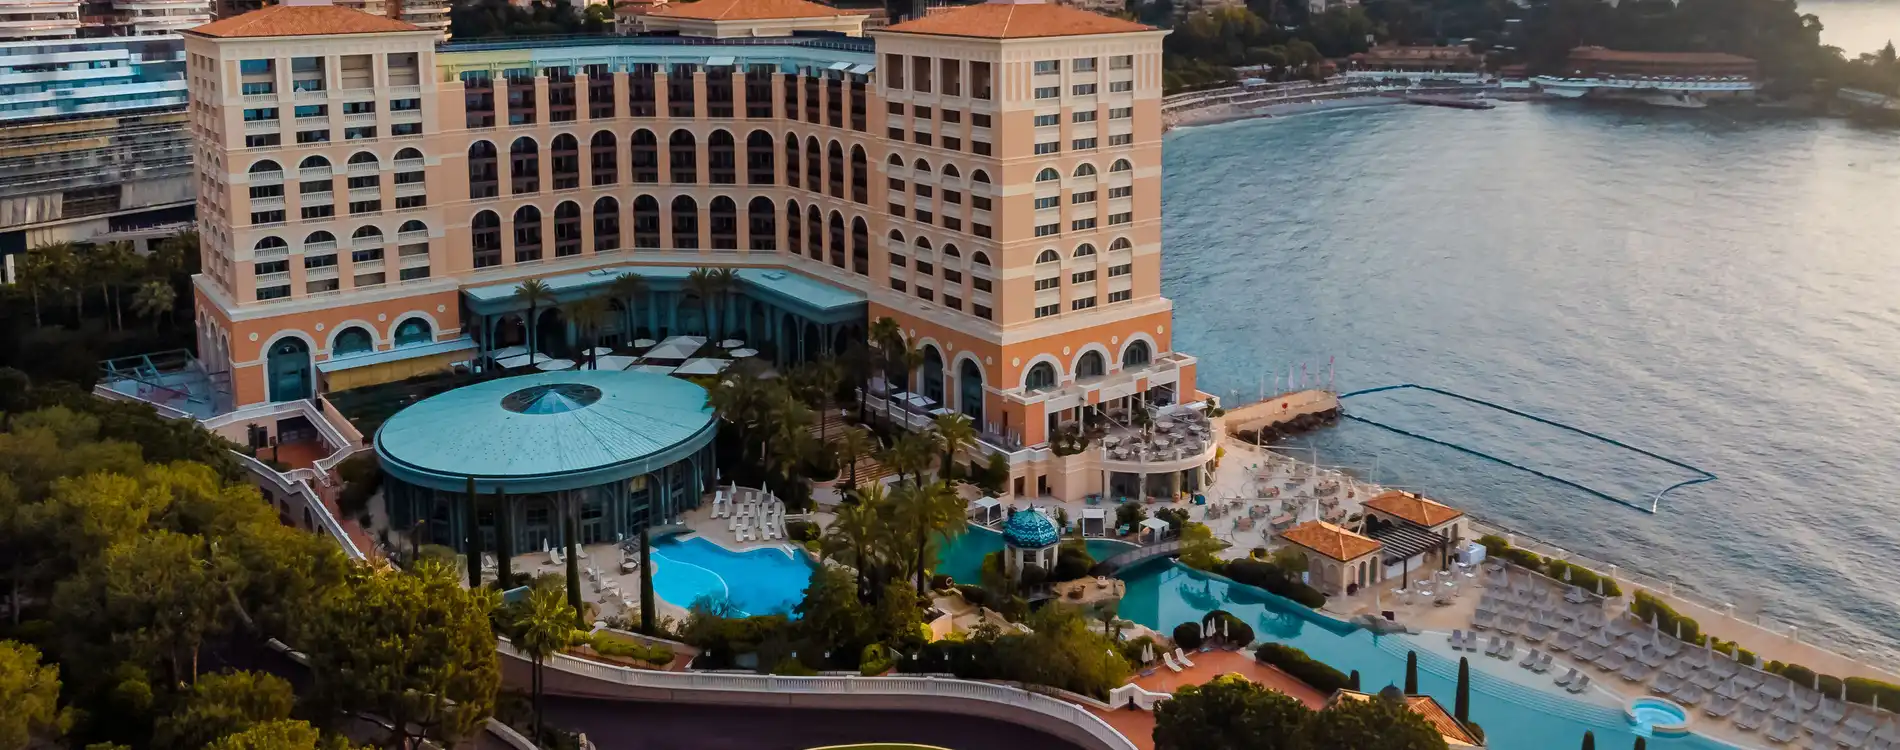 Monte-Carlo Bay Hotel & Resort Façade